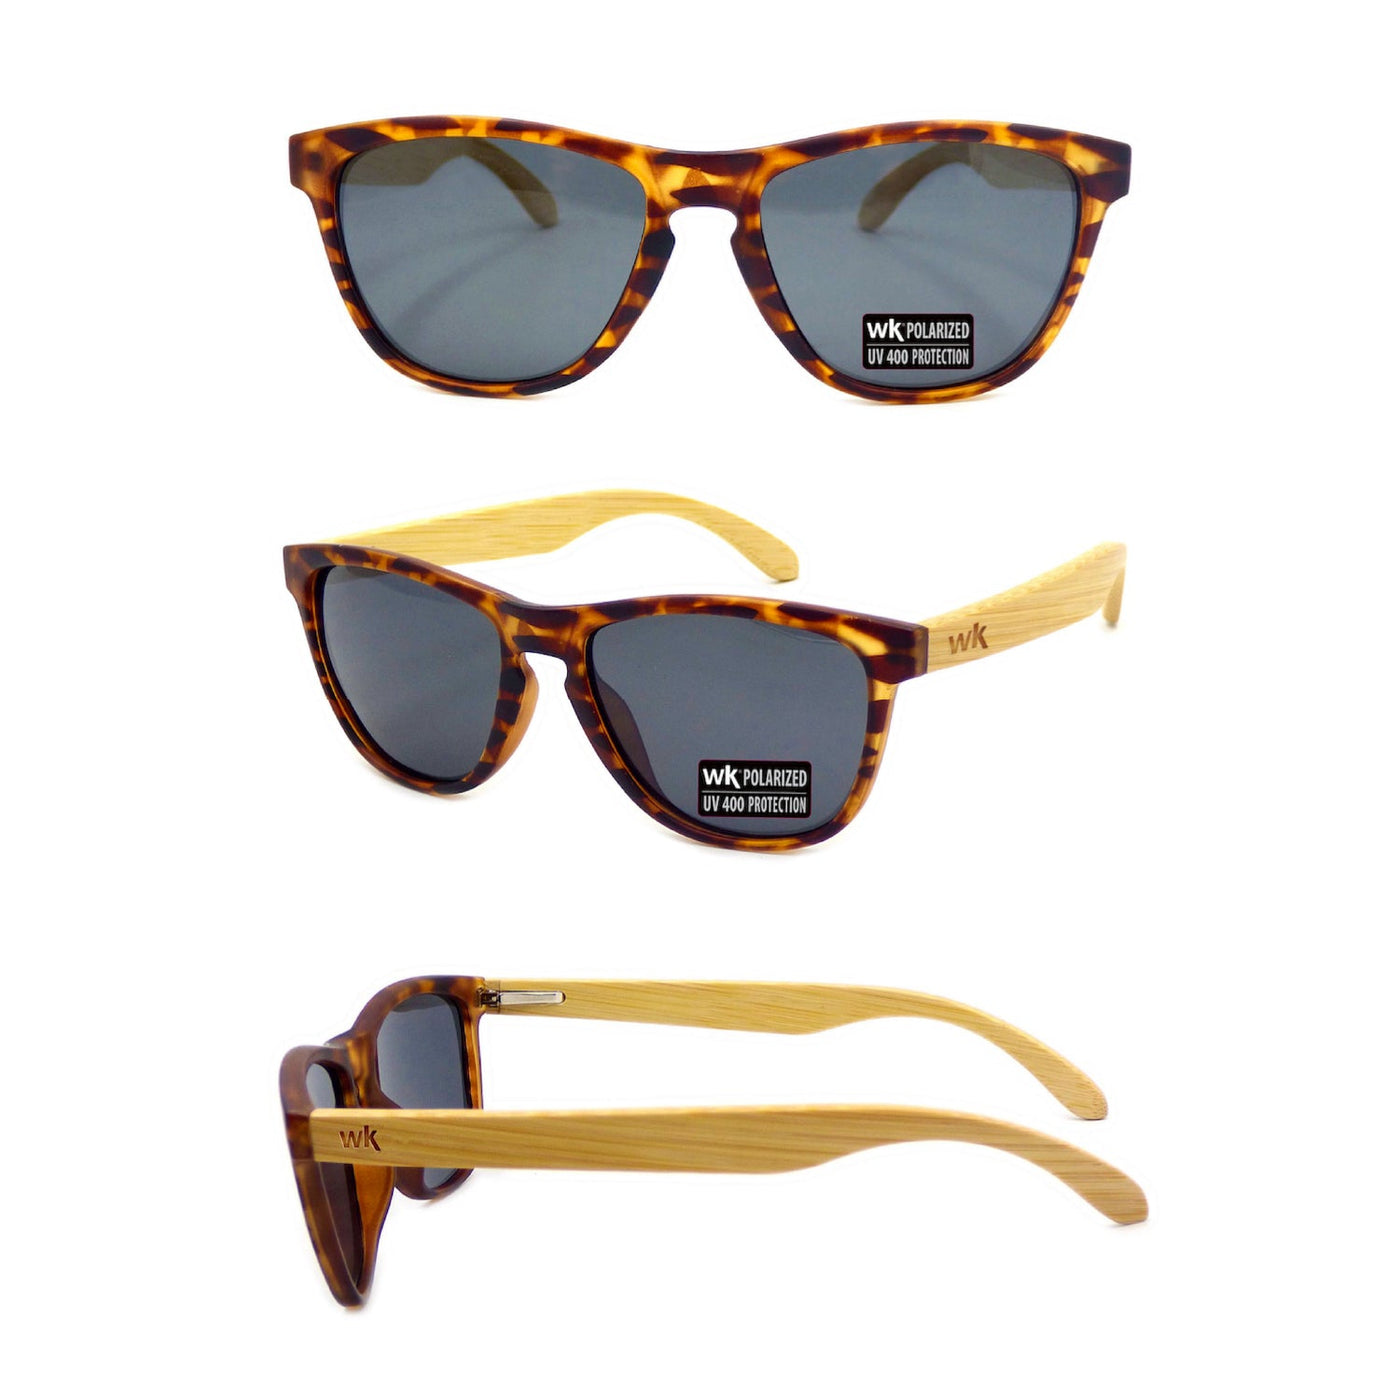 Bamboo Sunglasses Polarised for Men and Women - Tortoise Shell